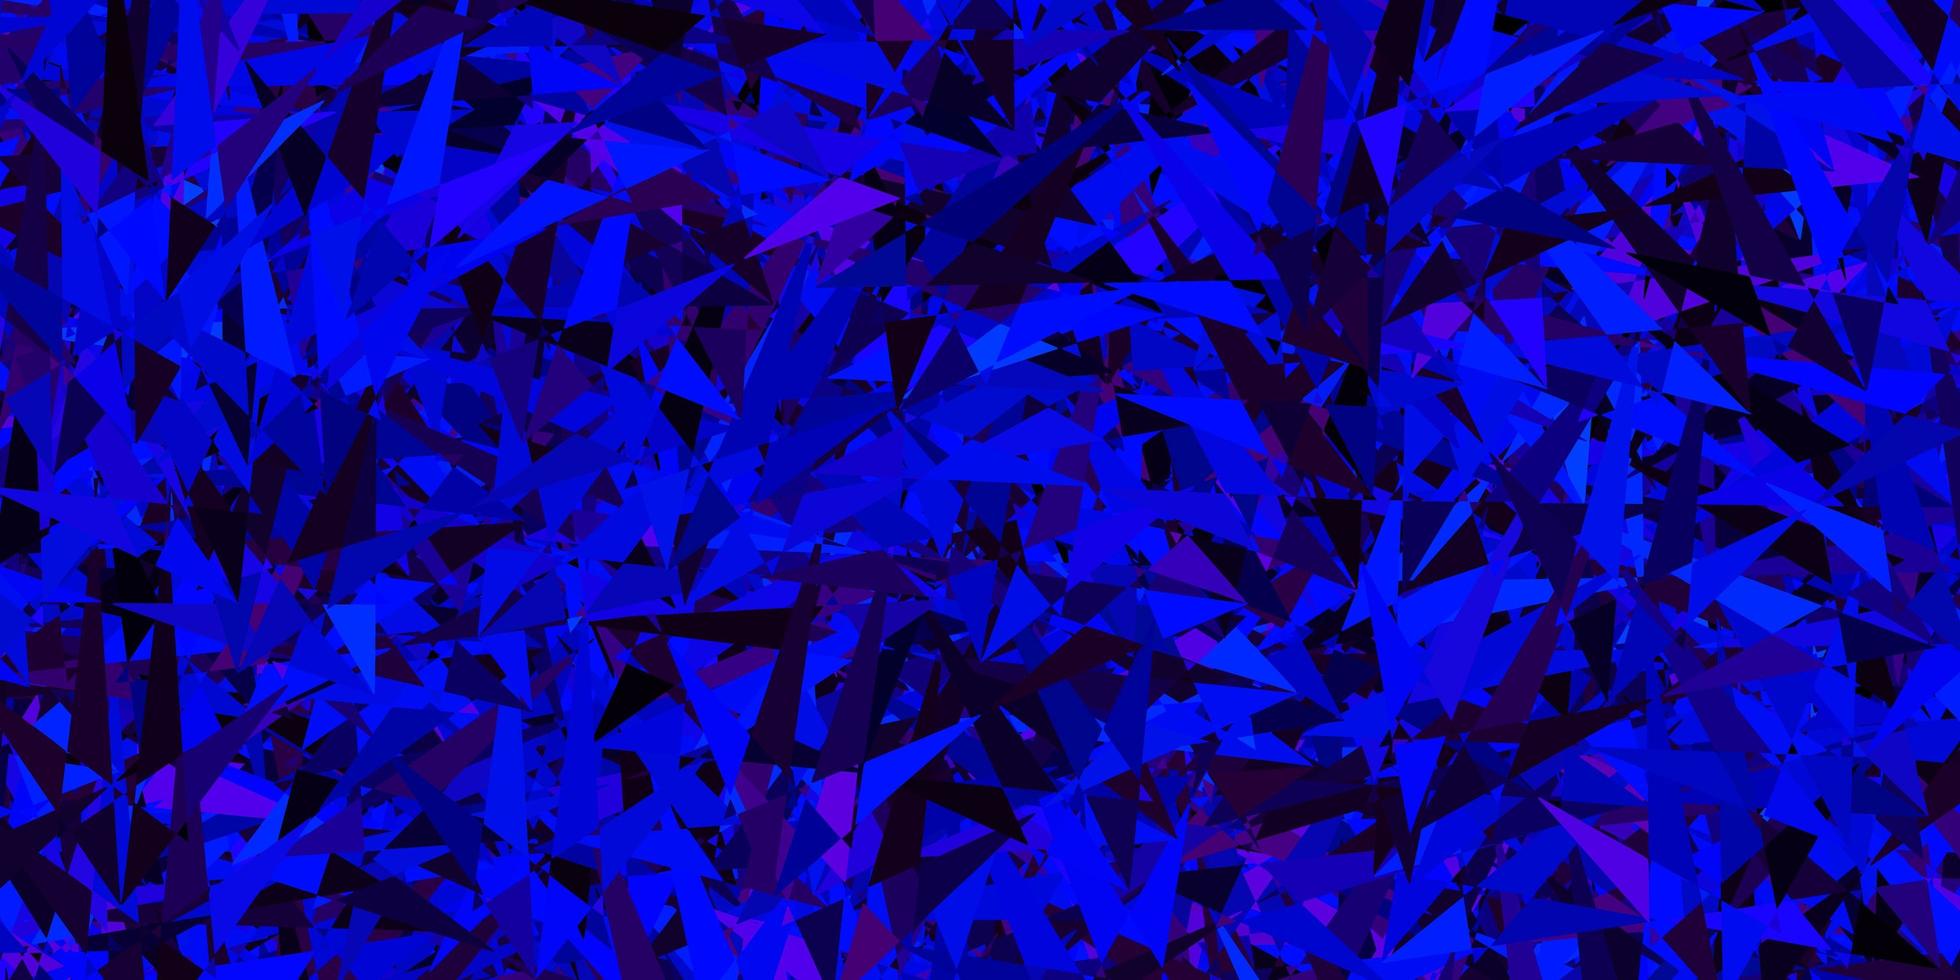 mörkrosa, blå vektorbakgrund med trianglar. vektor